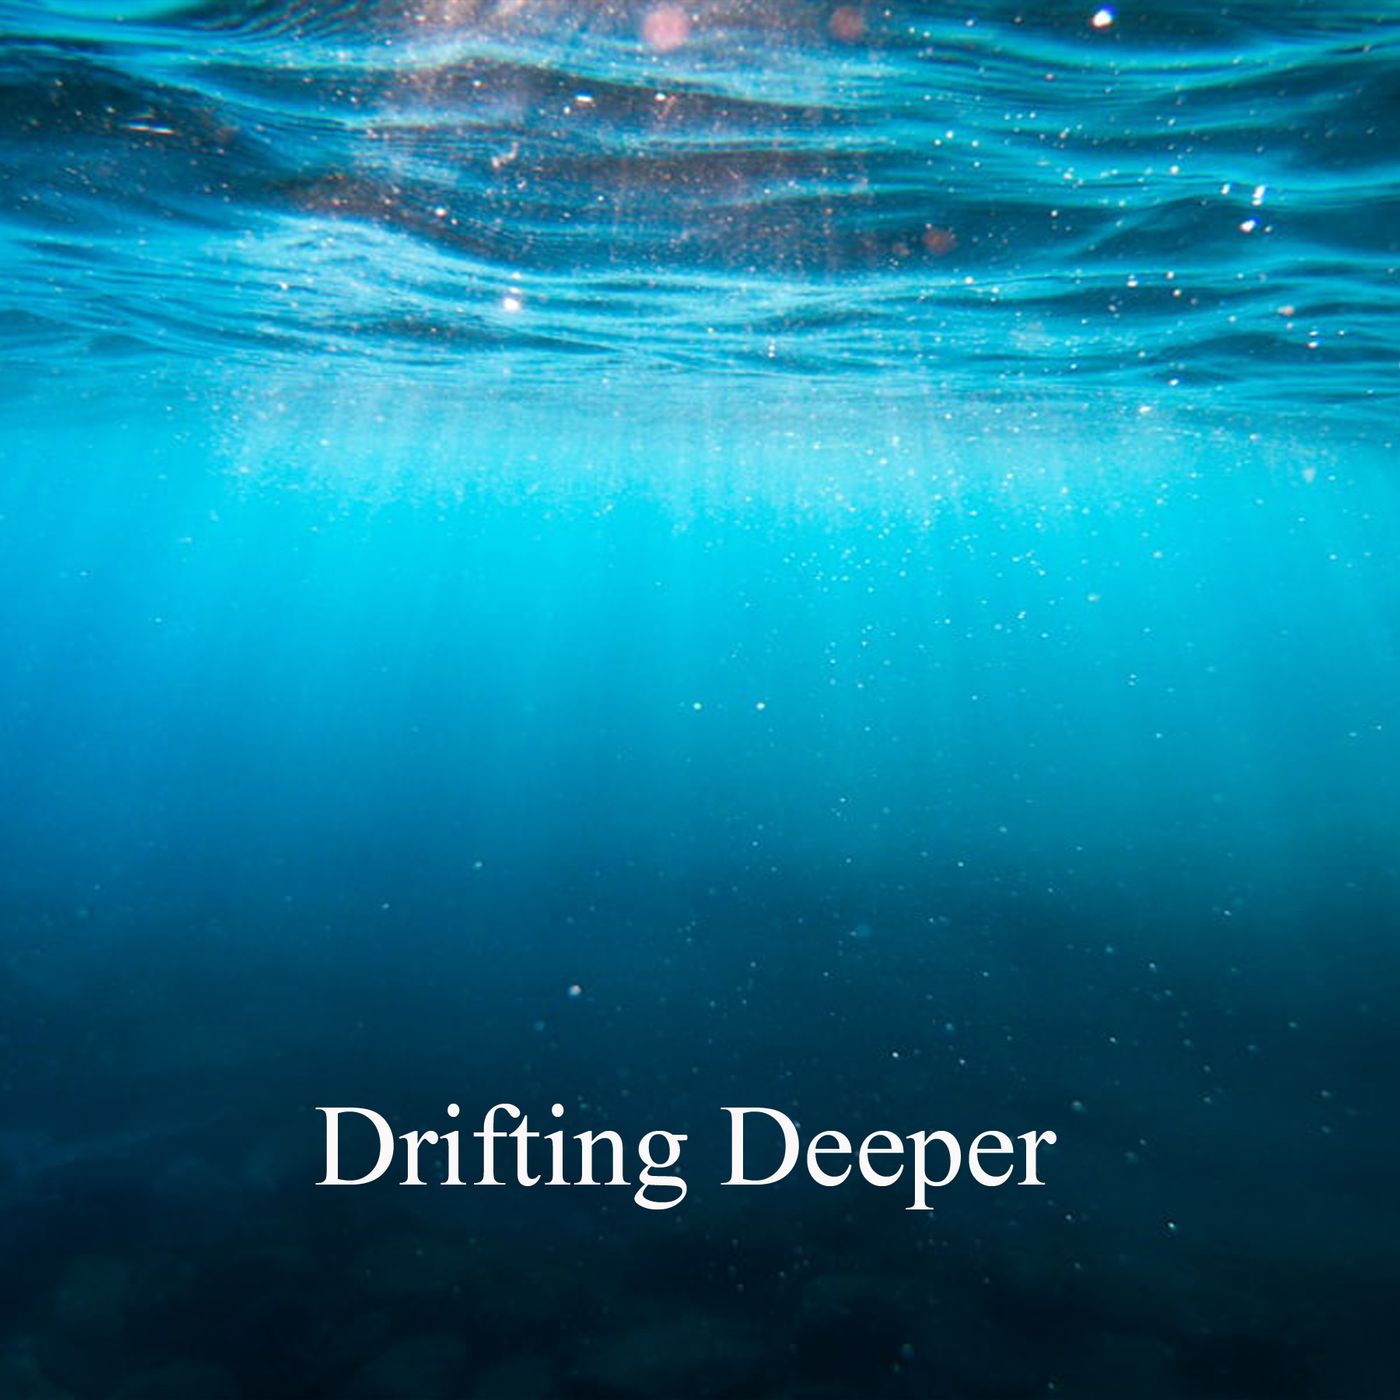 Drifting Deeper